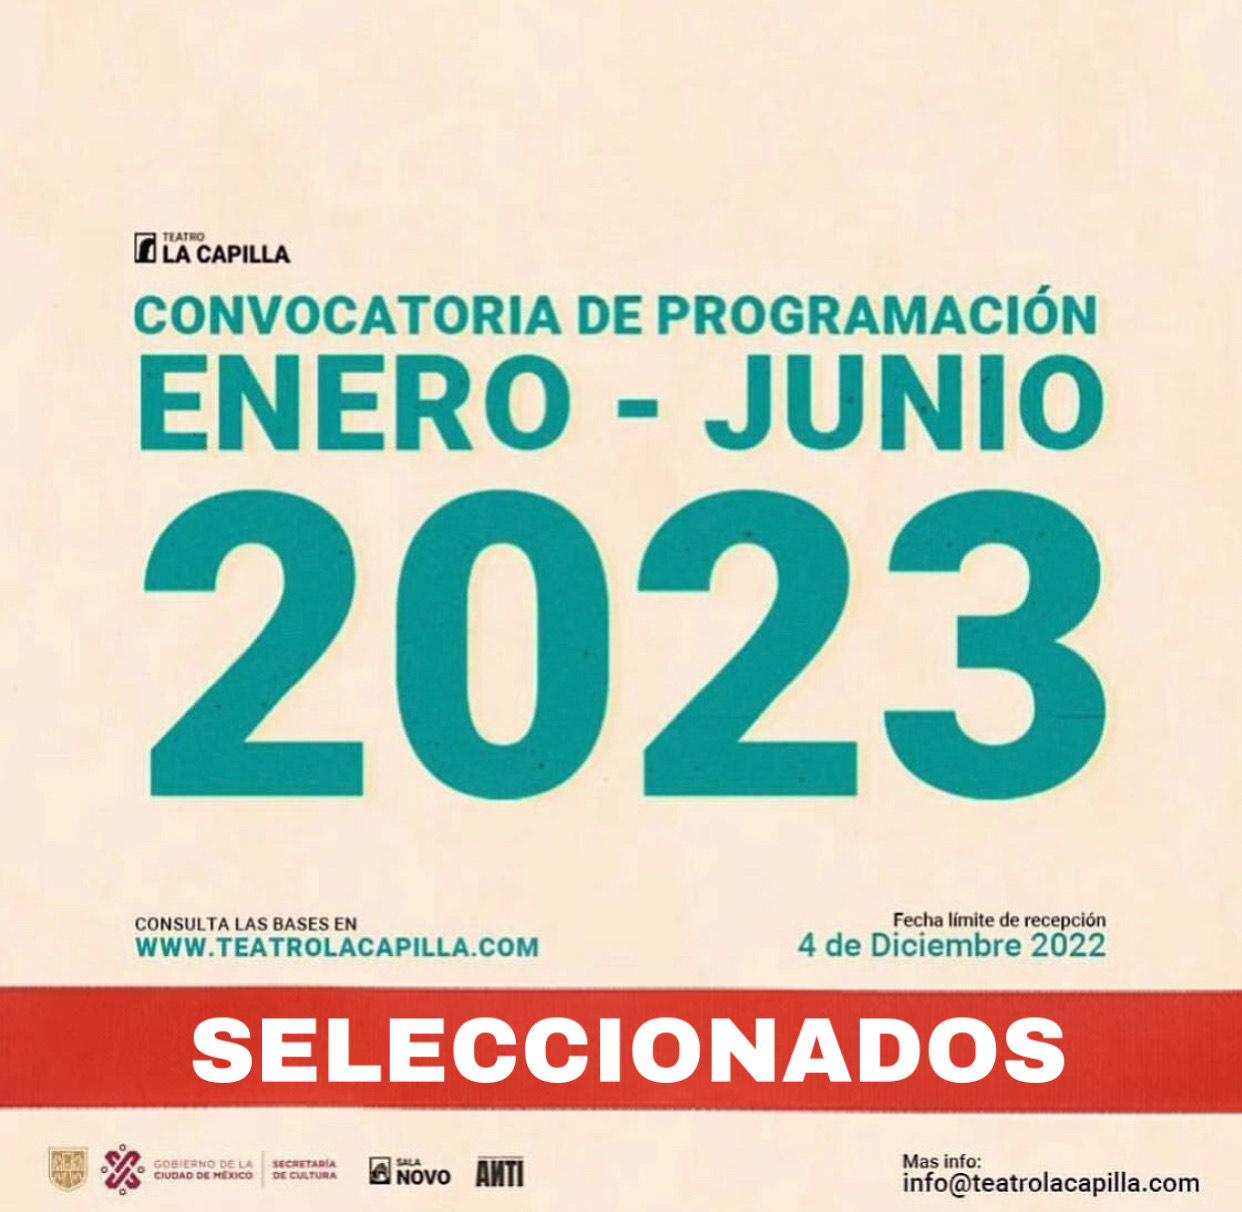 Seleccionados de la convocatoria “Programación 2023 Teatro La Capilla: 70 años de teatro en Madrid 13”